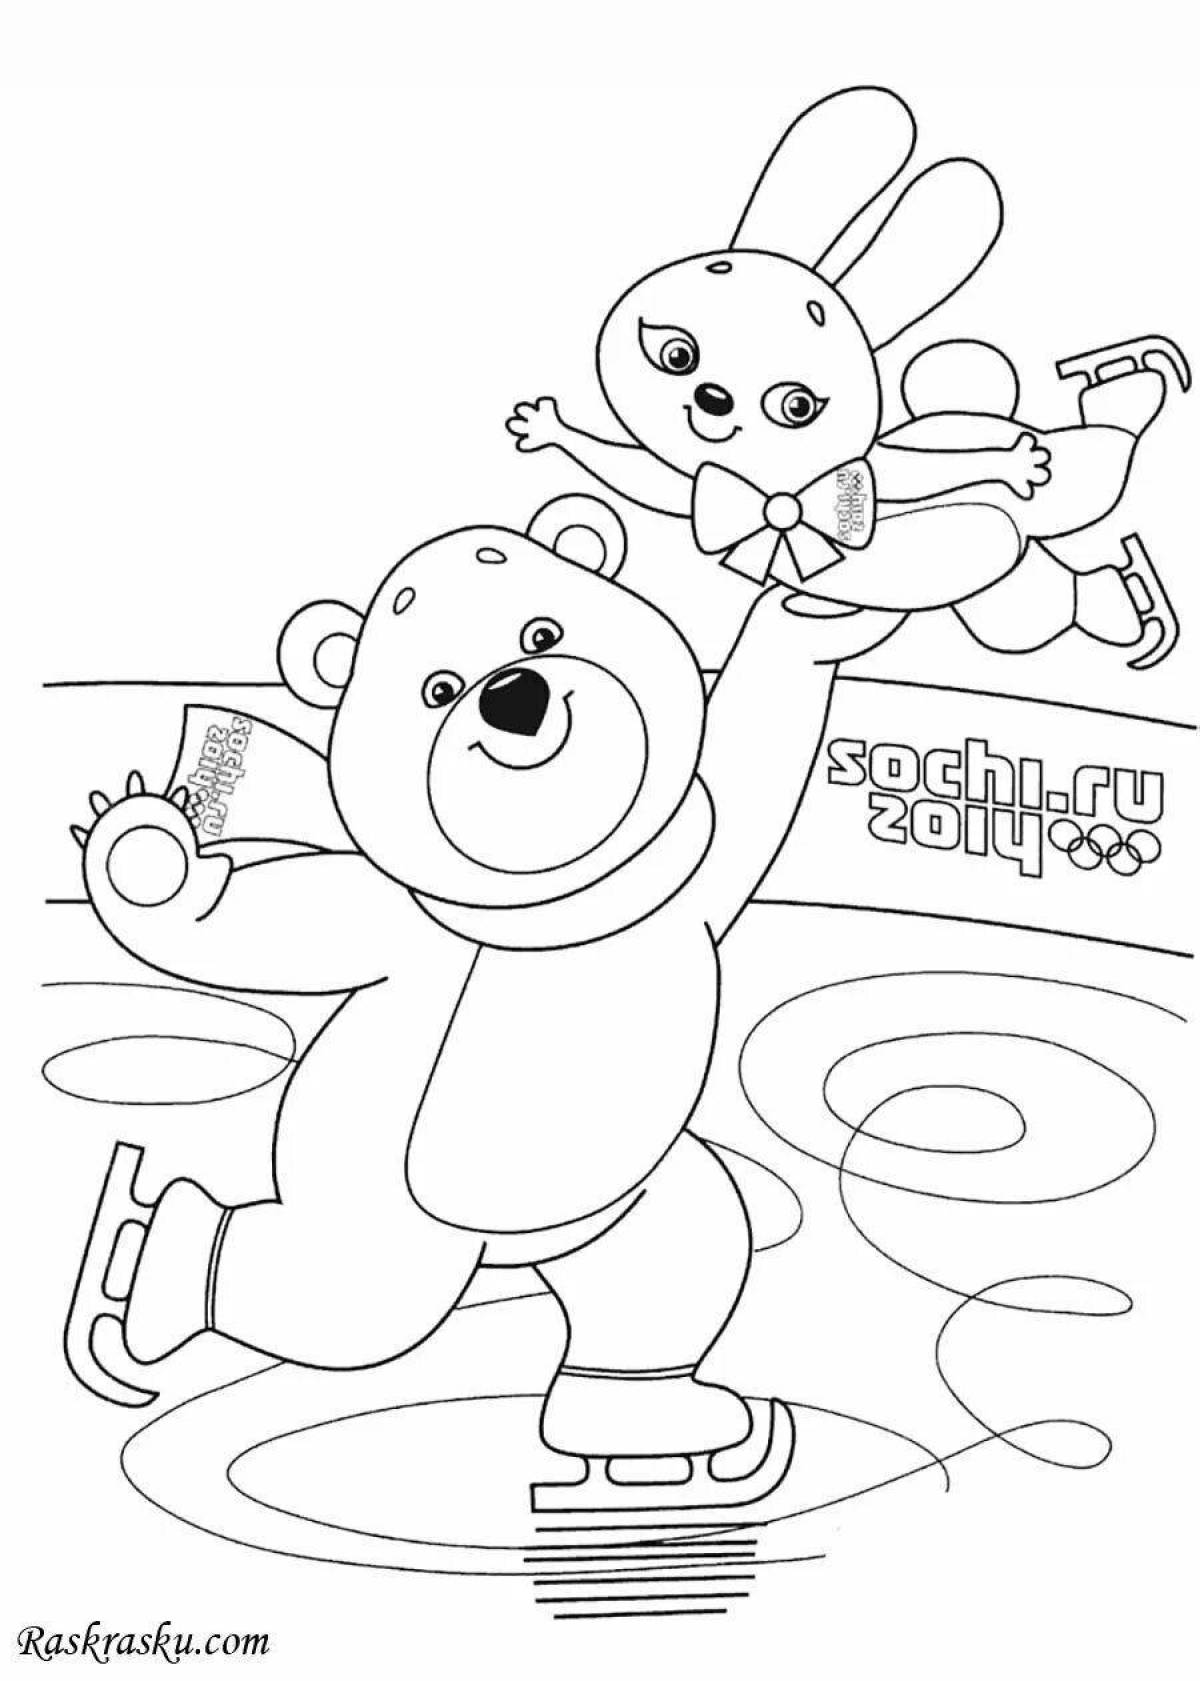 Медведи раскраска игра. Раскраска Олимпийские игры для детей. Символ олимпиады раскраска. Олимпийские талисманы раскраска. Раскраска Олимпийские талисманы Сочи 2014.